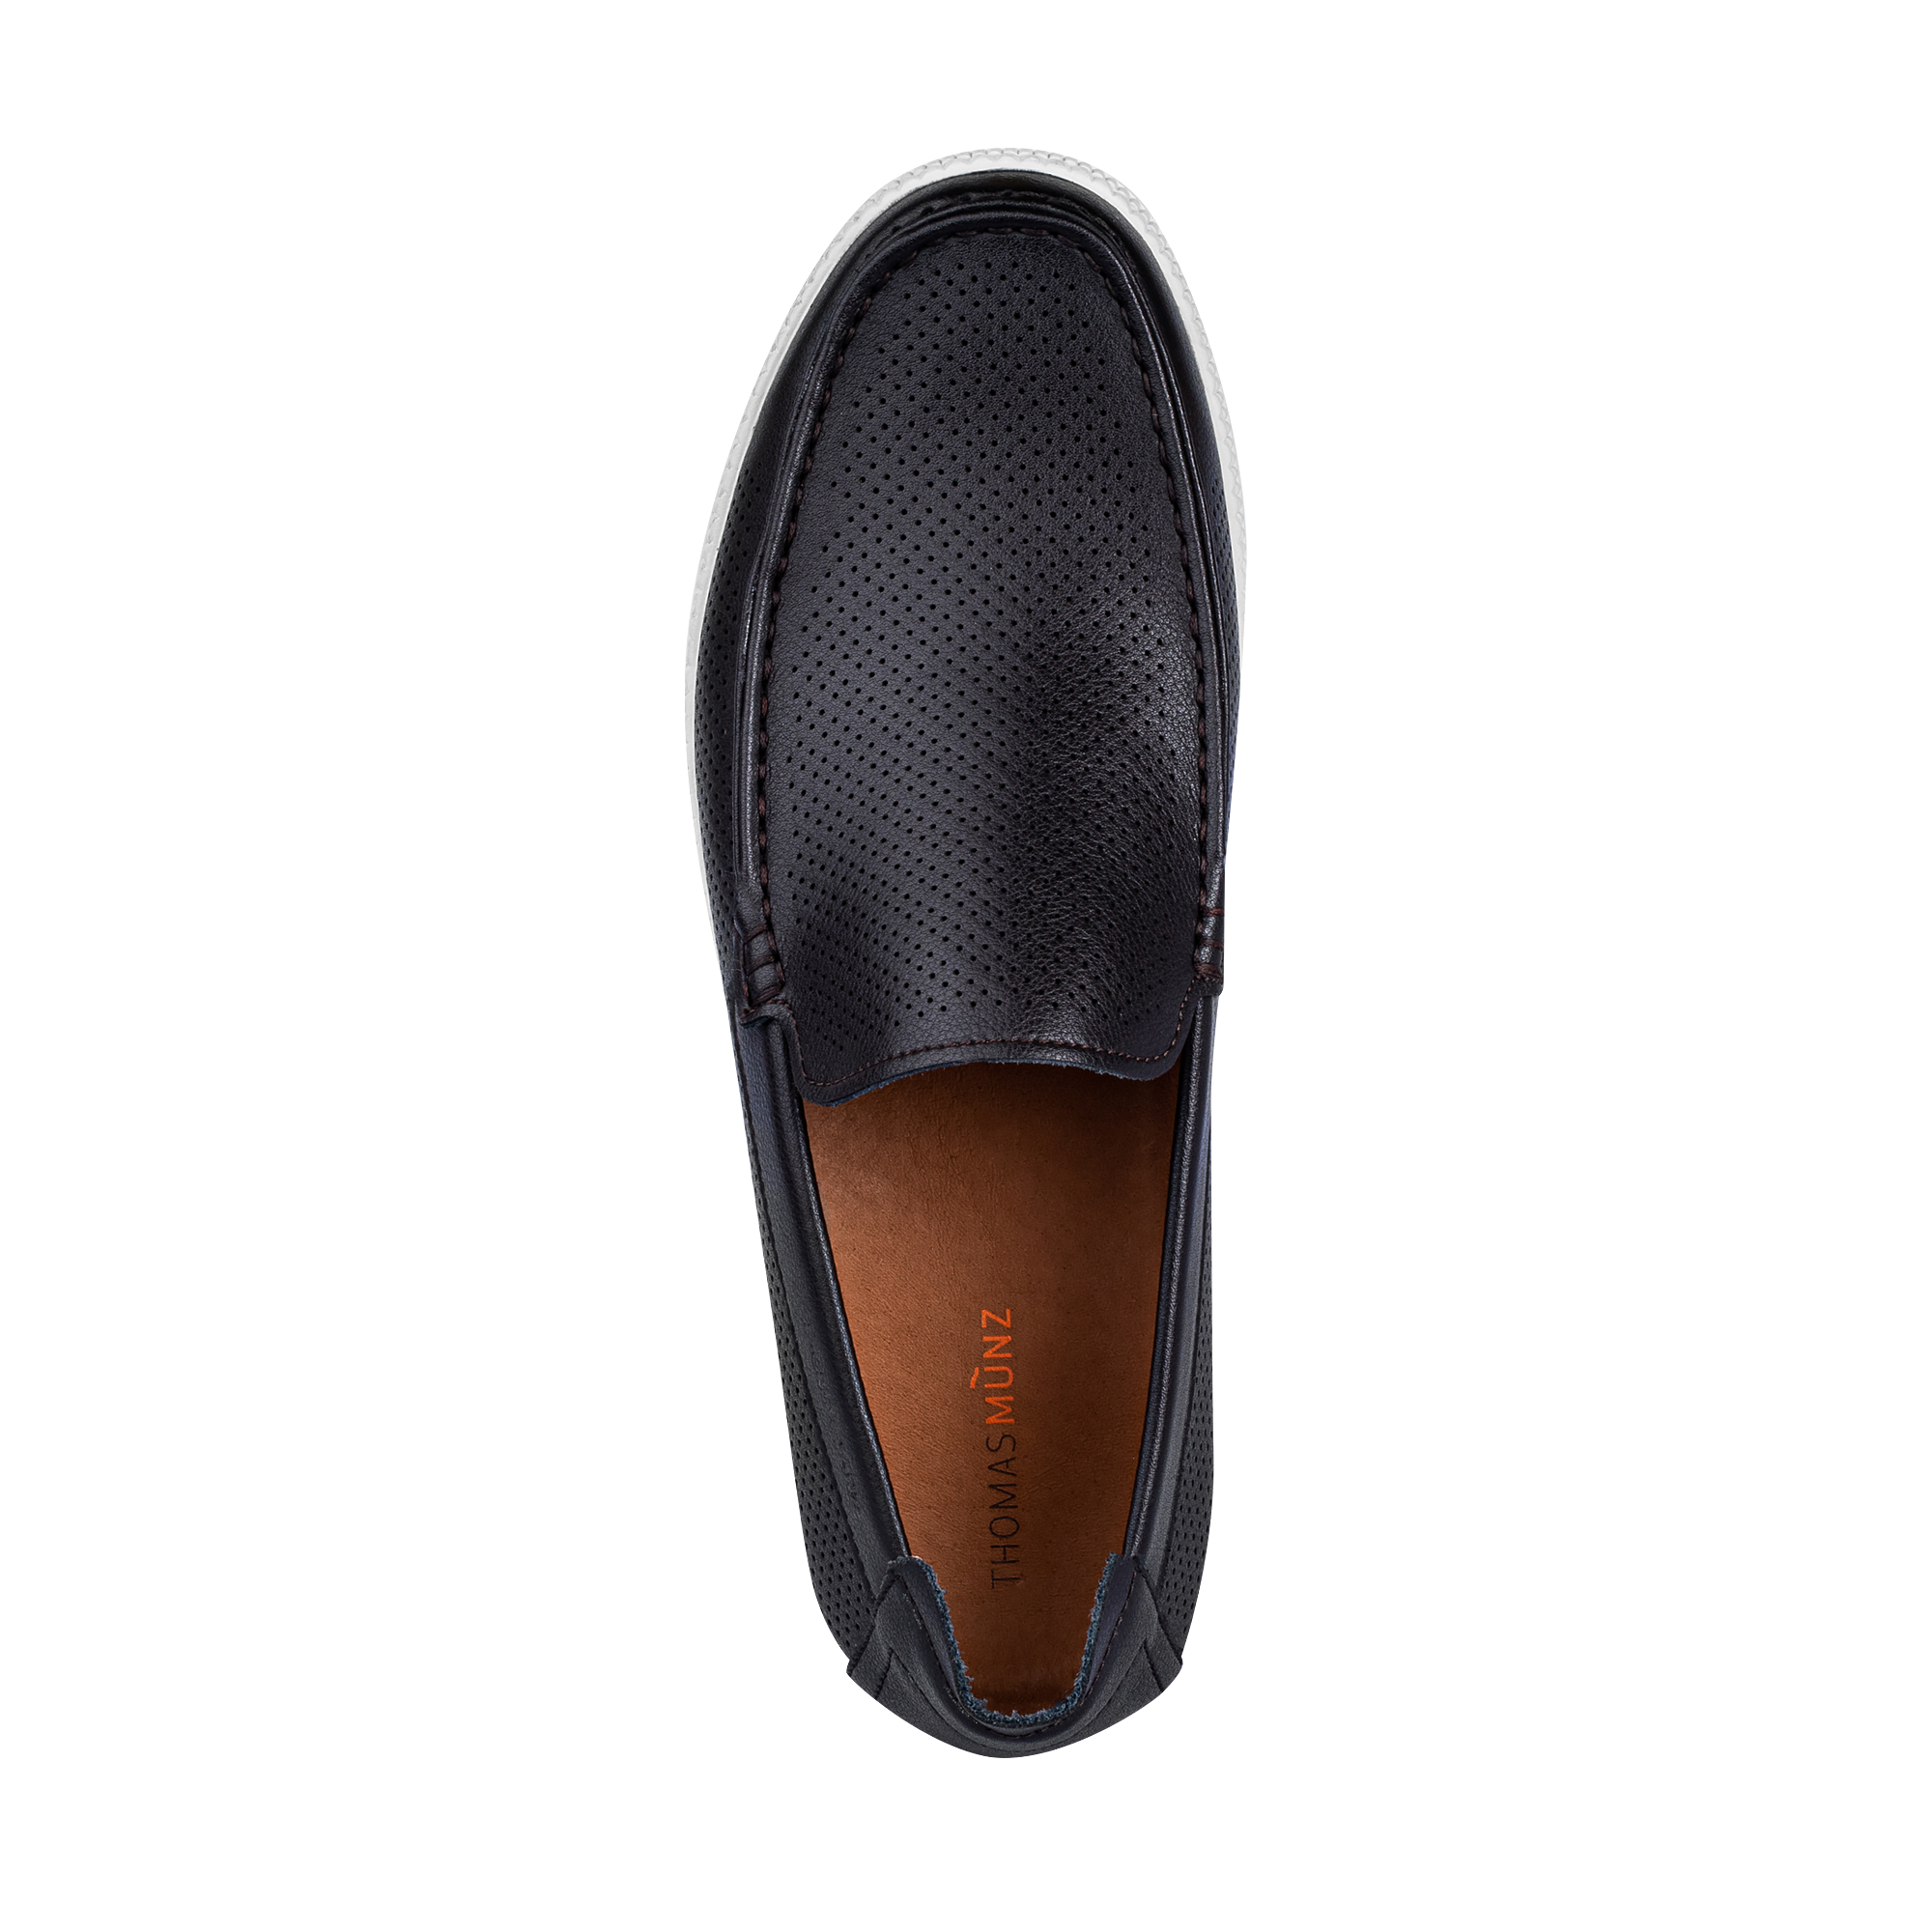 Туфли/полуботинки Thomas Munz 058-833B-1609, цвет темно-коричневый, размер 42 - фото 5